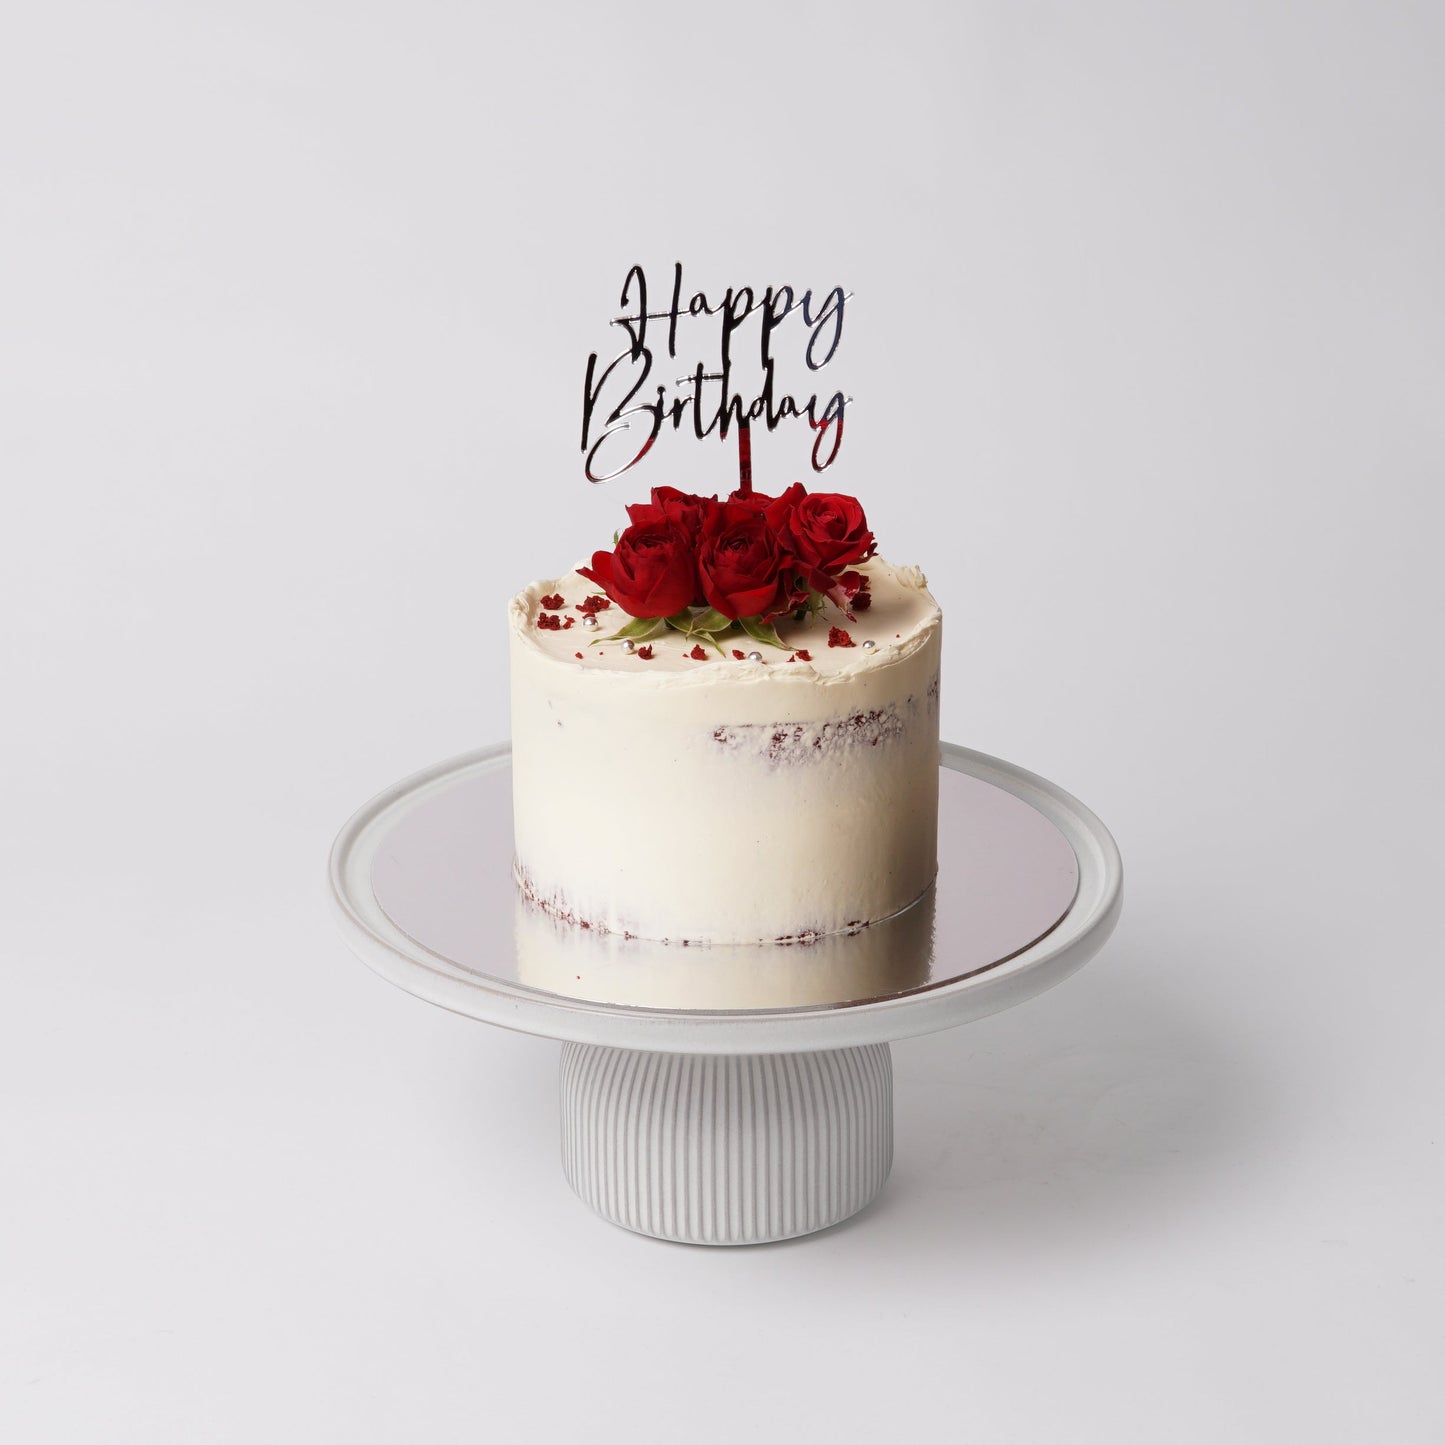 FOR HER #4 - RED VELVET CAKE